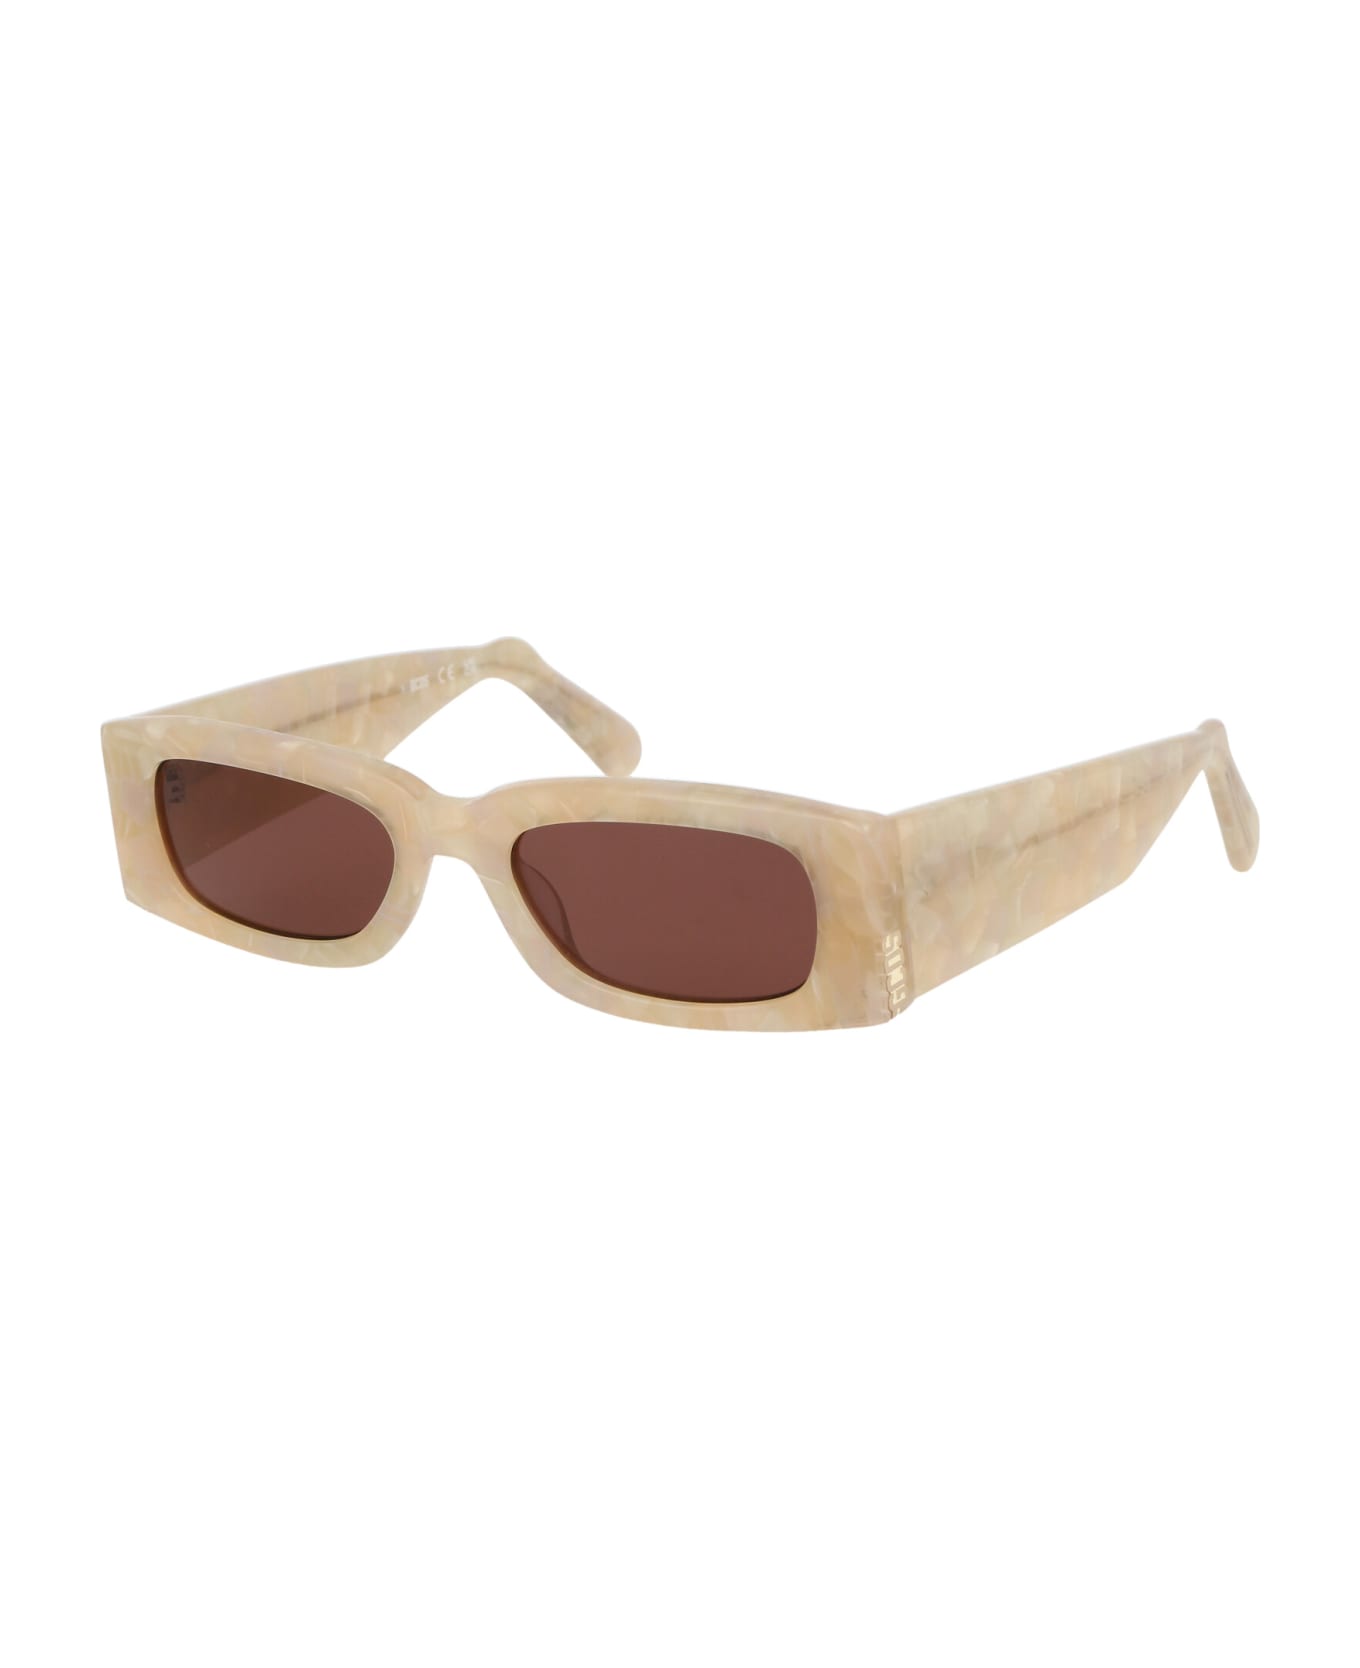 GCDS Gd0020 Sunglasses - 25S Avorio/Bordeaux